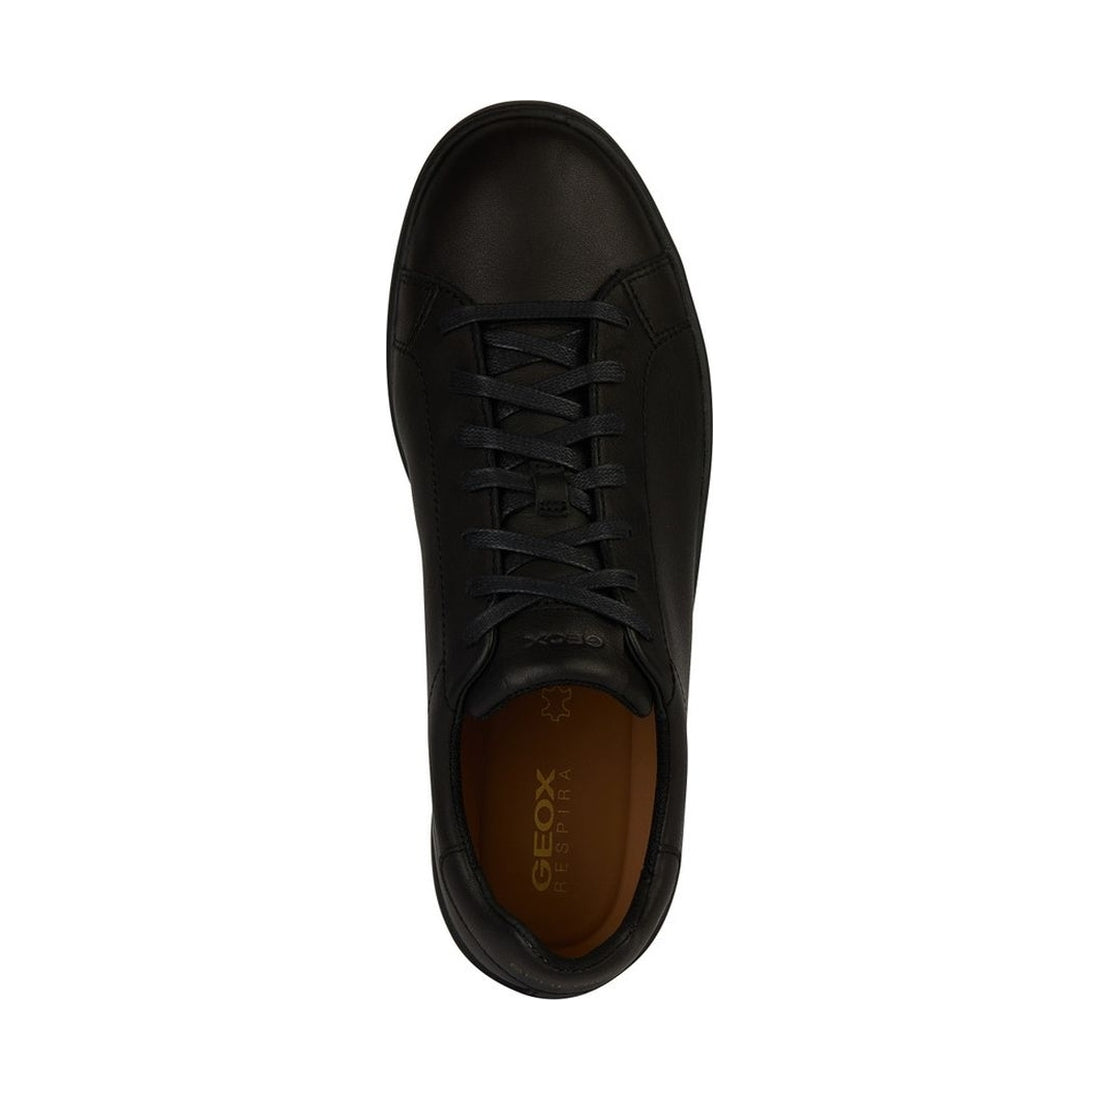 spherica ecub-1 sneakers black